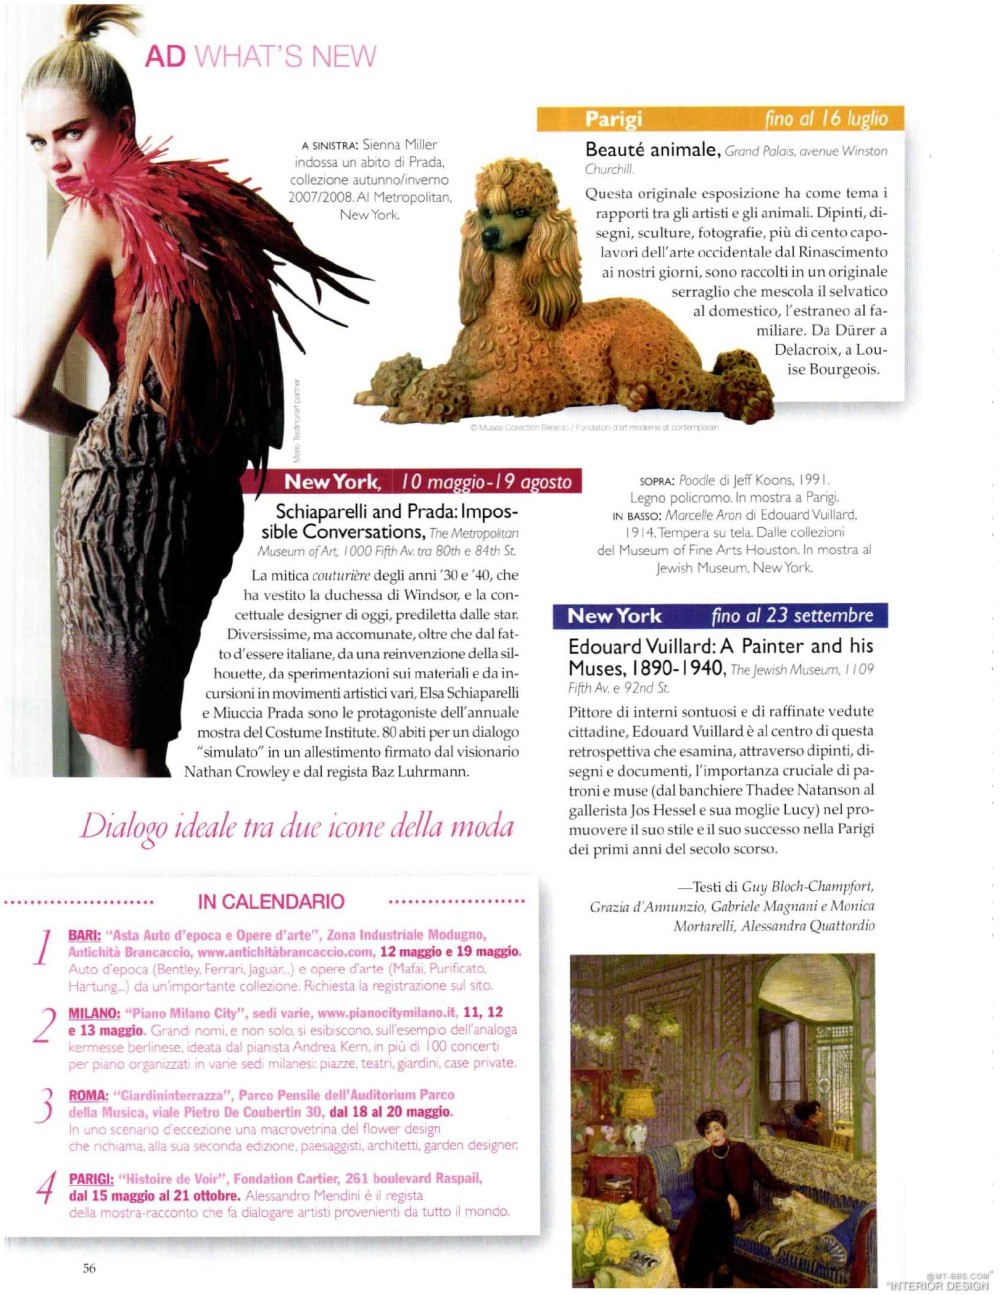 意大利AD 杂志 2012年全年JPG高清版本 全免（上传完毕）_0058.jpg